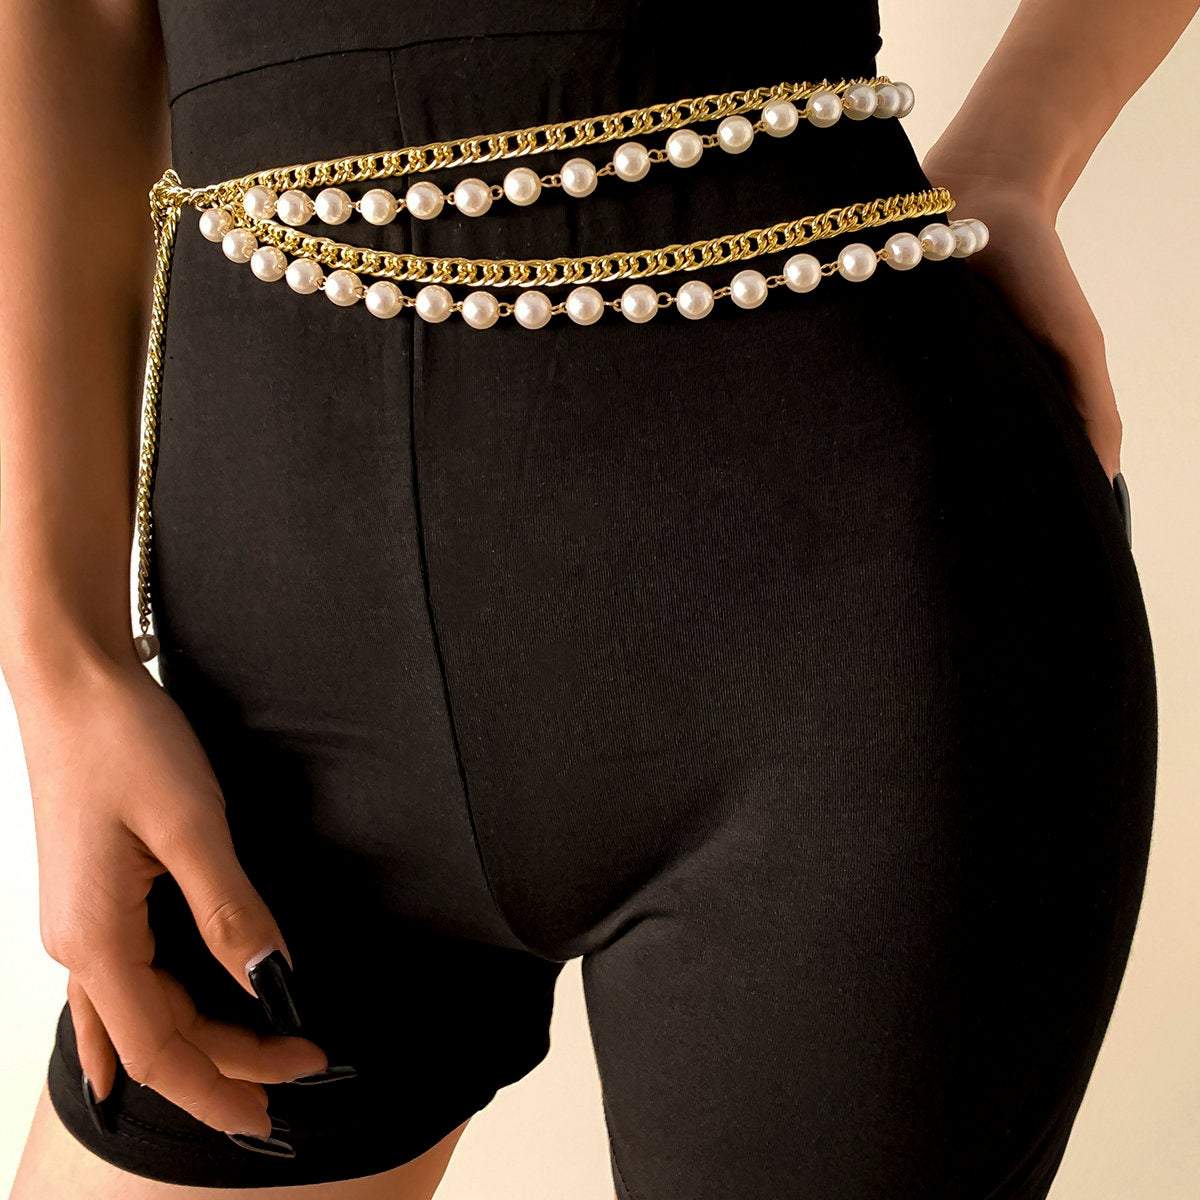 Top more than 146 pearl beaded leggings super hot